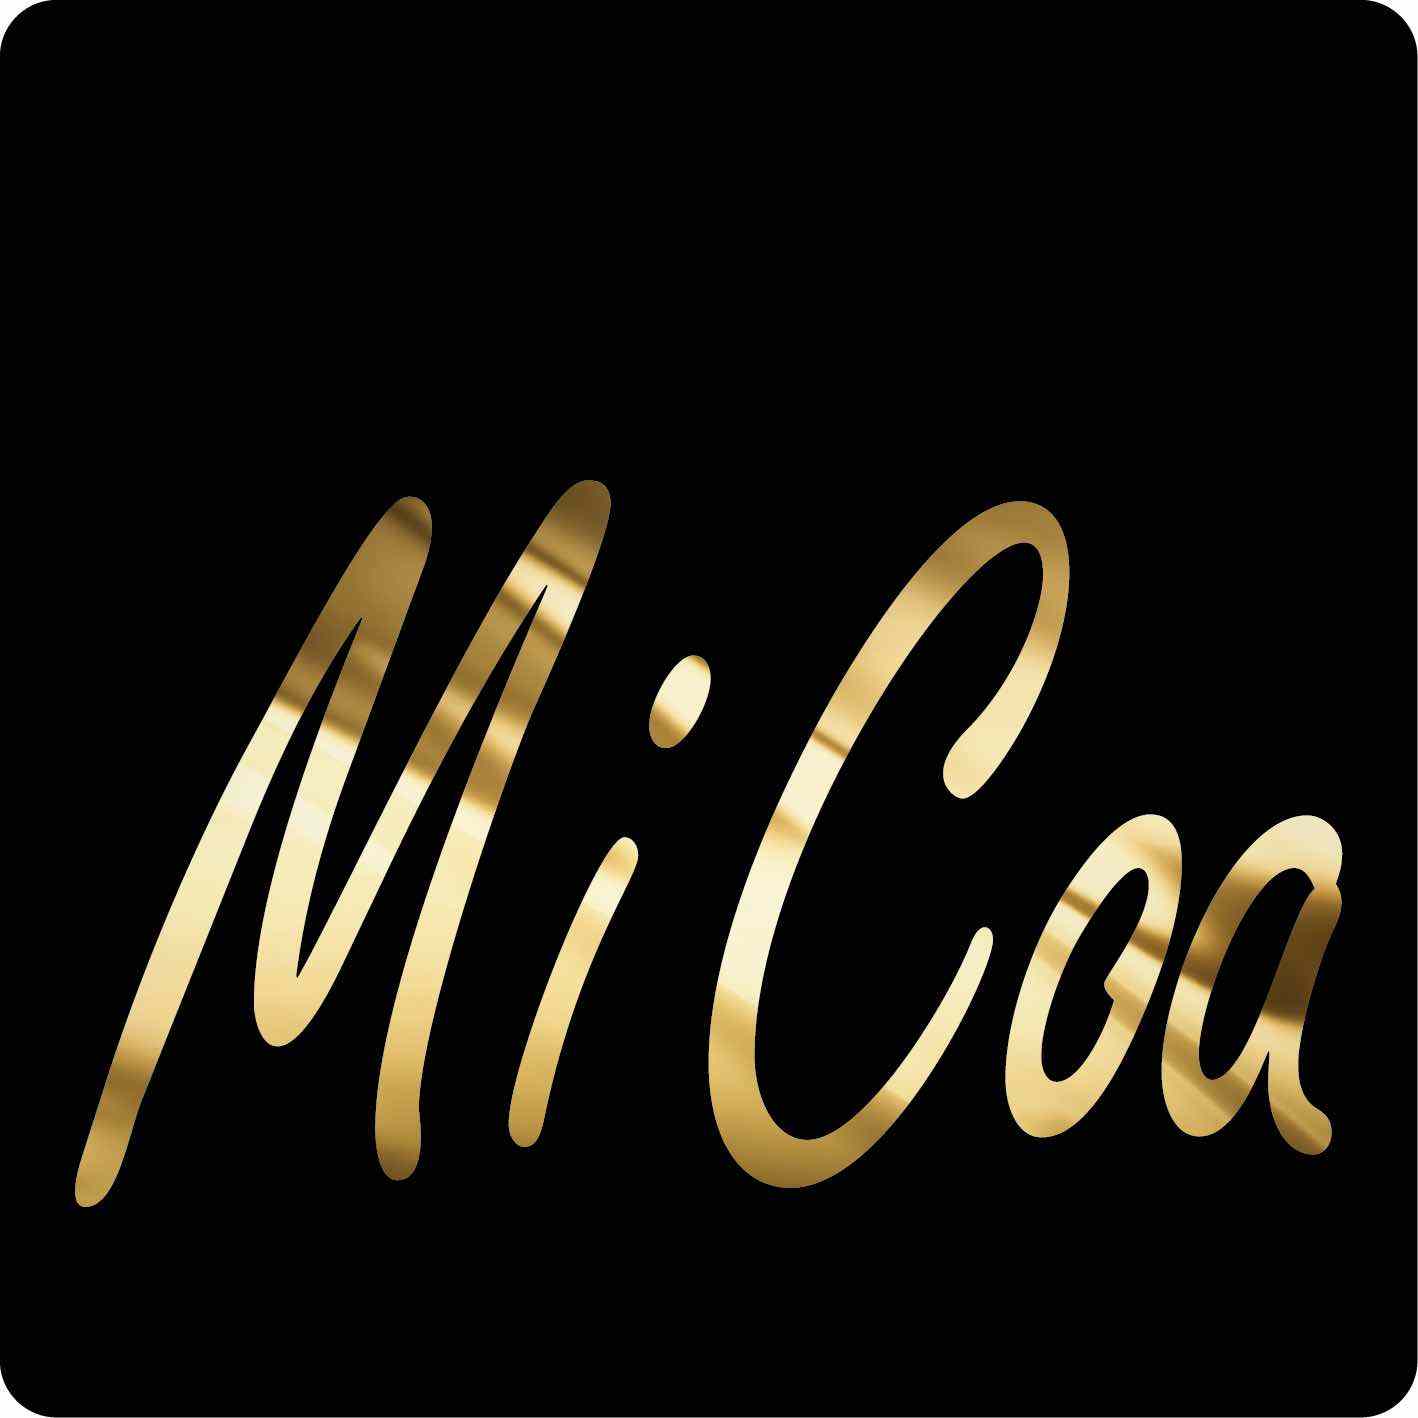 (c) Micoa.it